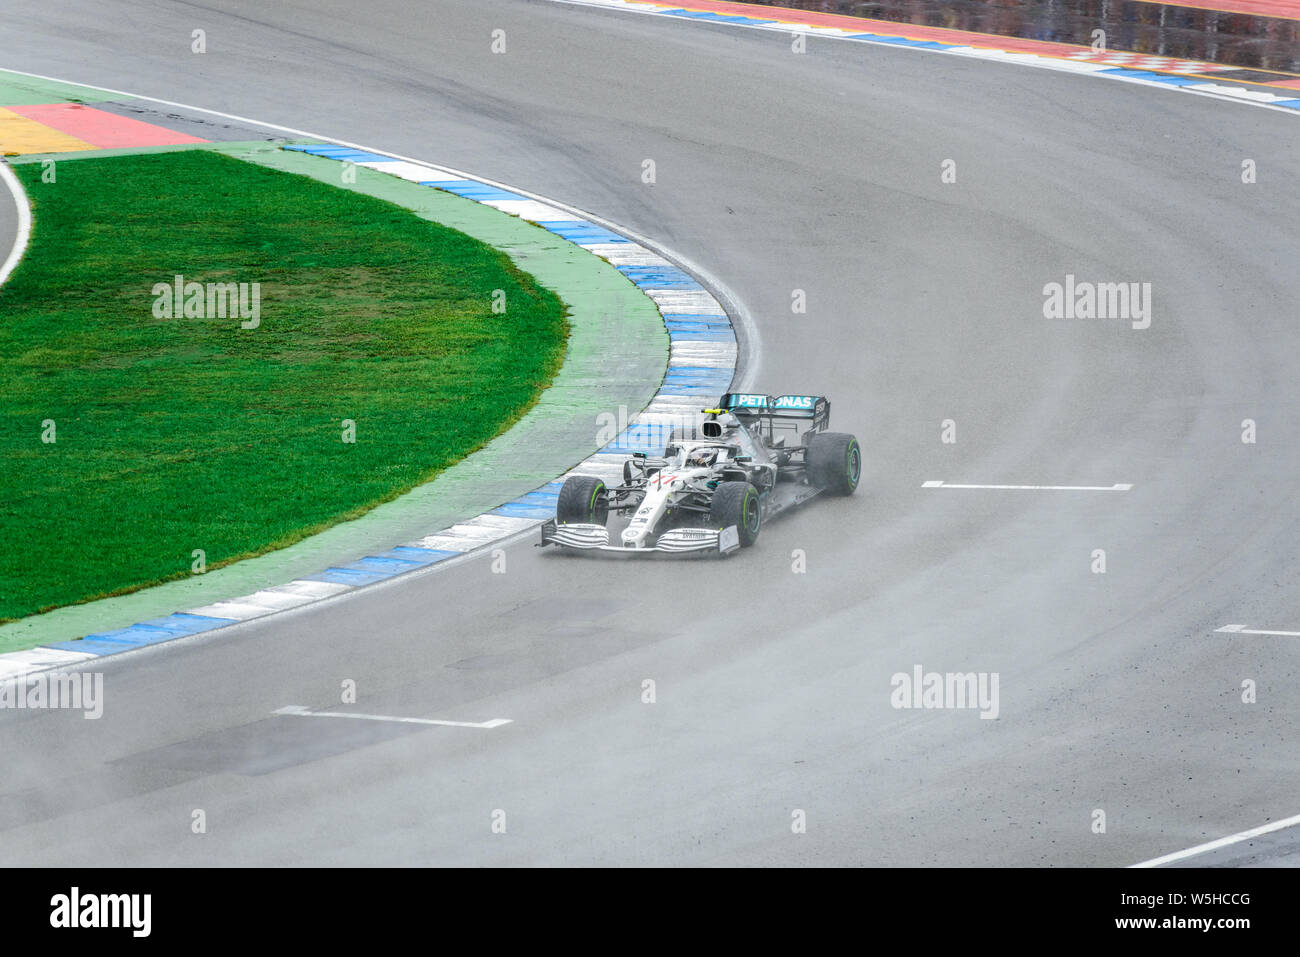 Formula 1 GP de Alemania en Hockenheim el 28 de julio de 2019: Mercedes, Valttery Bottas Foto de stock